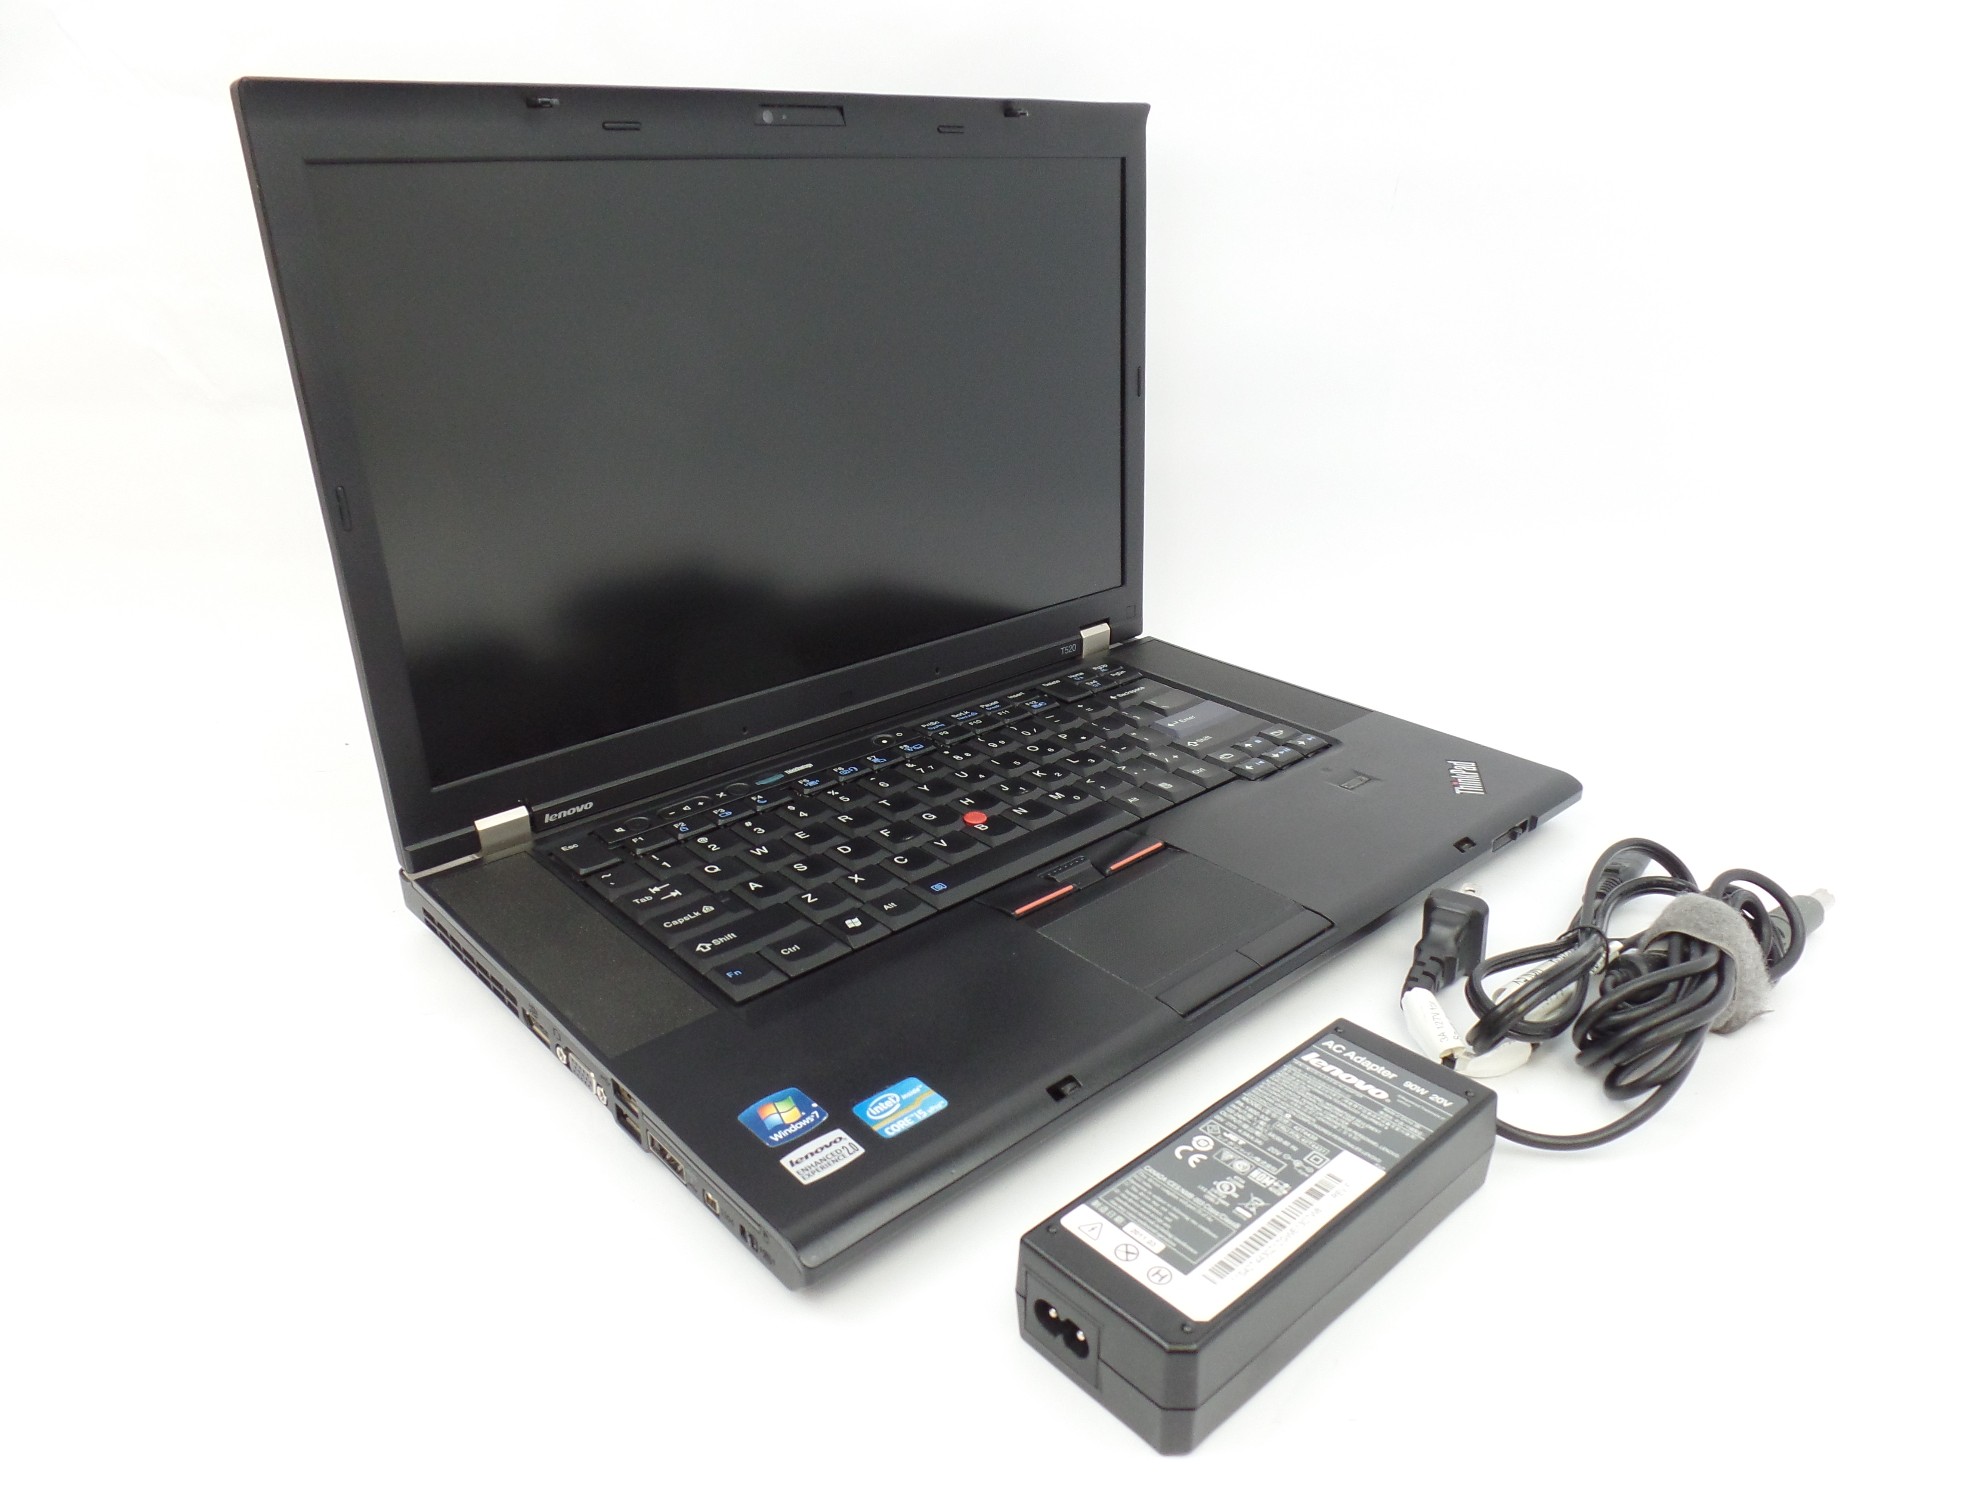 Lenovo ThinkPad T520 15.6" HD+ i5-2520M 2.5GHz 4GB 500GB NVS 4200M W7P Laptop U 